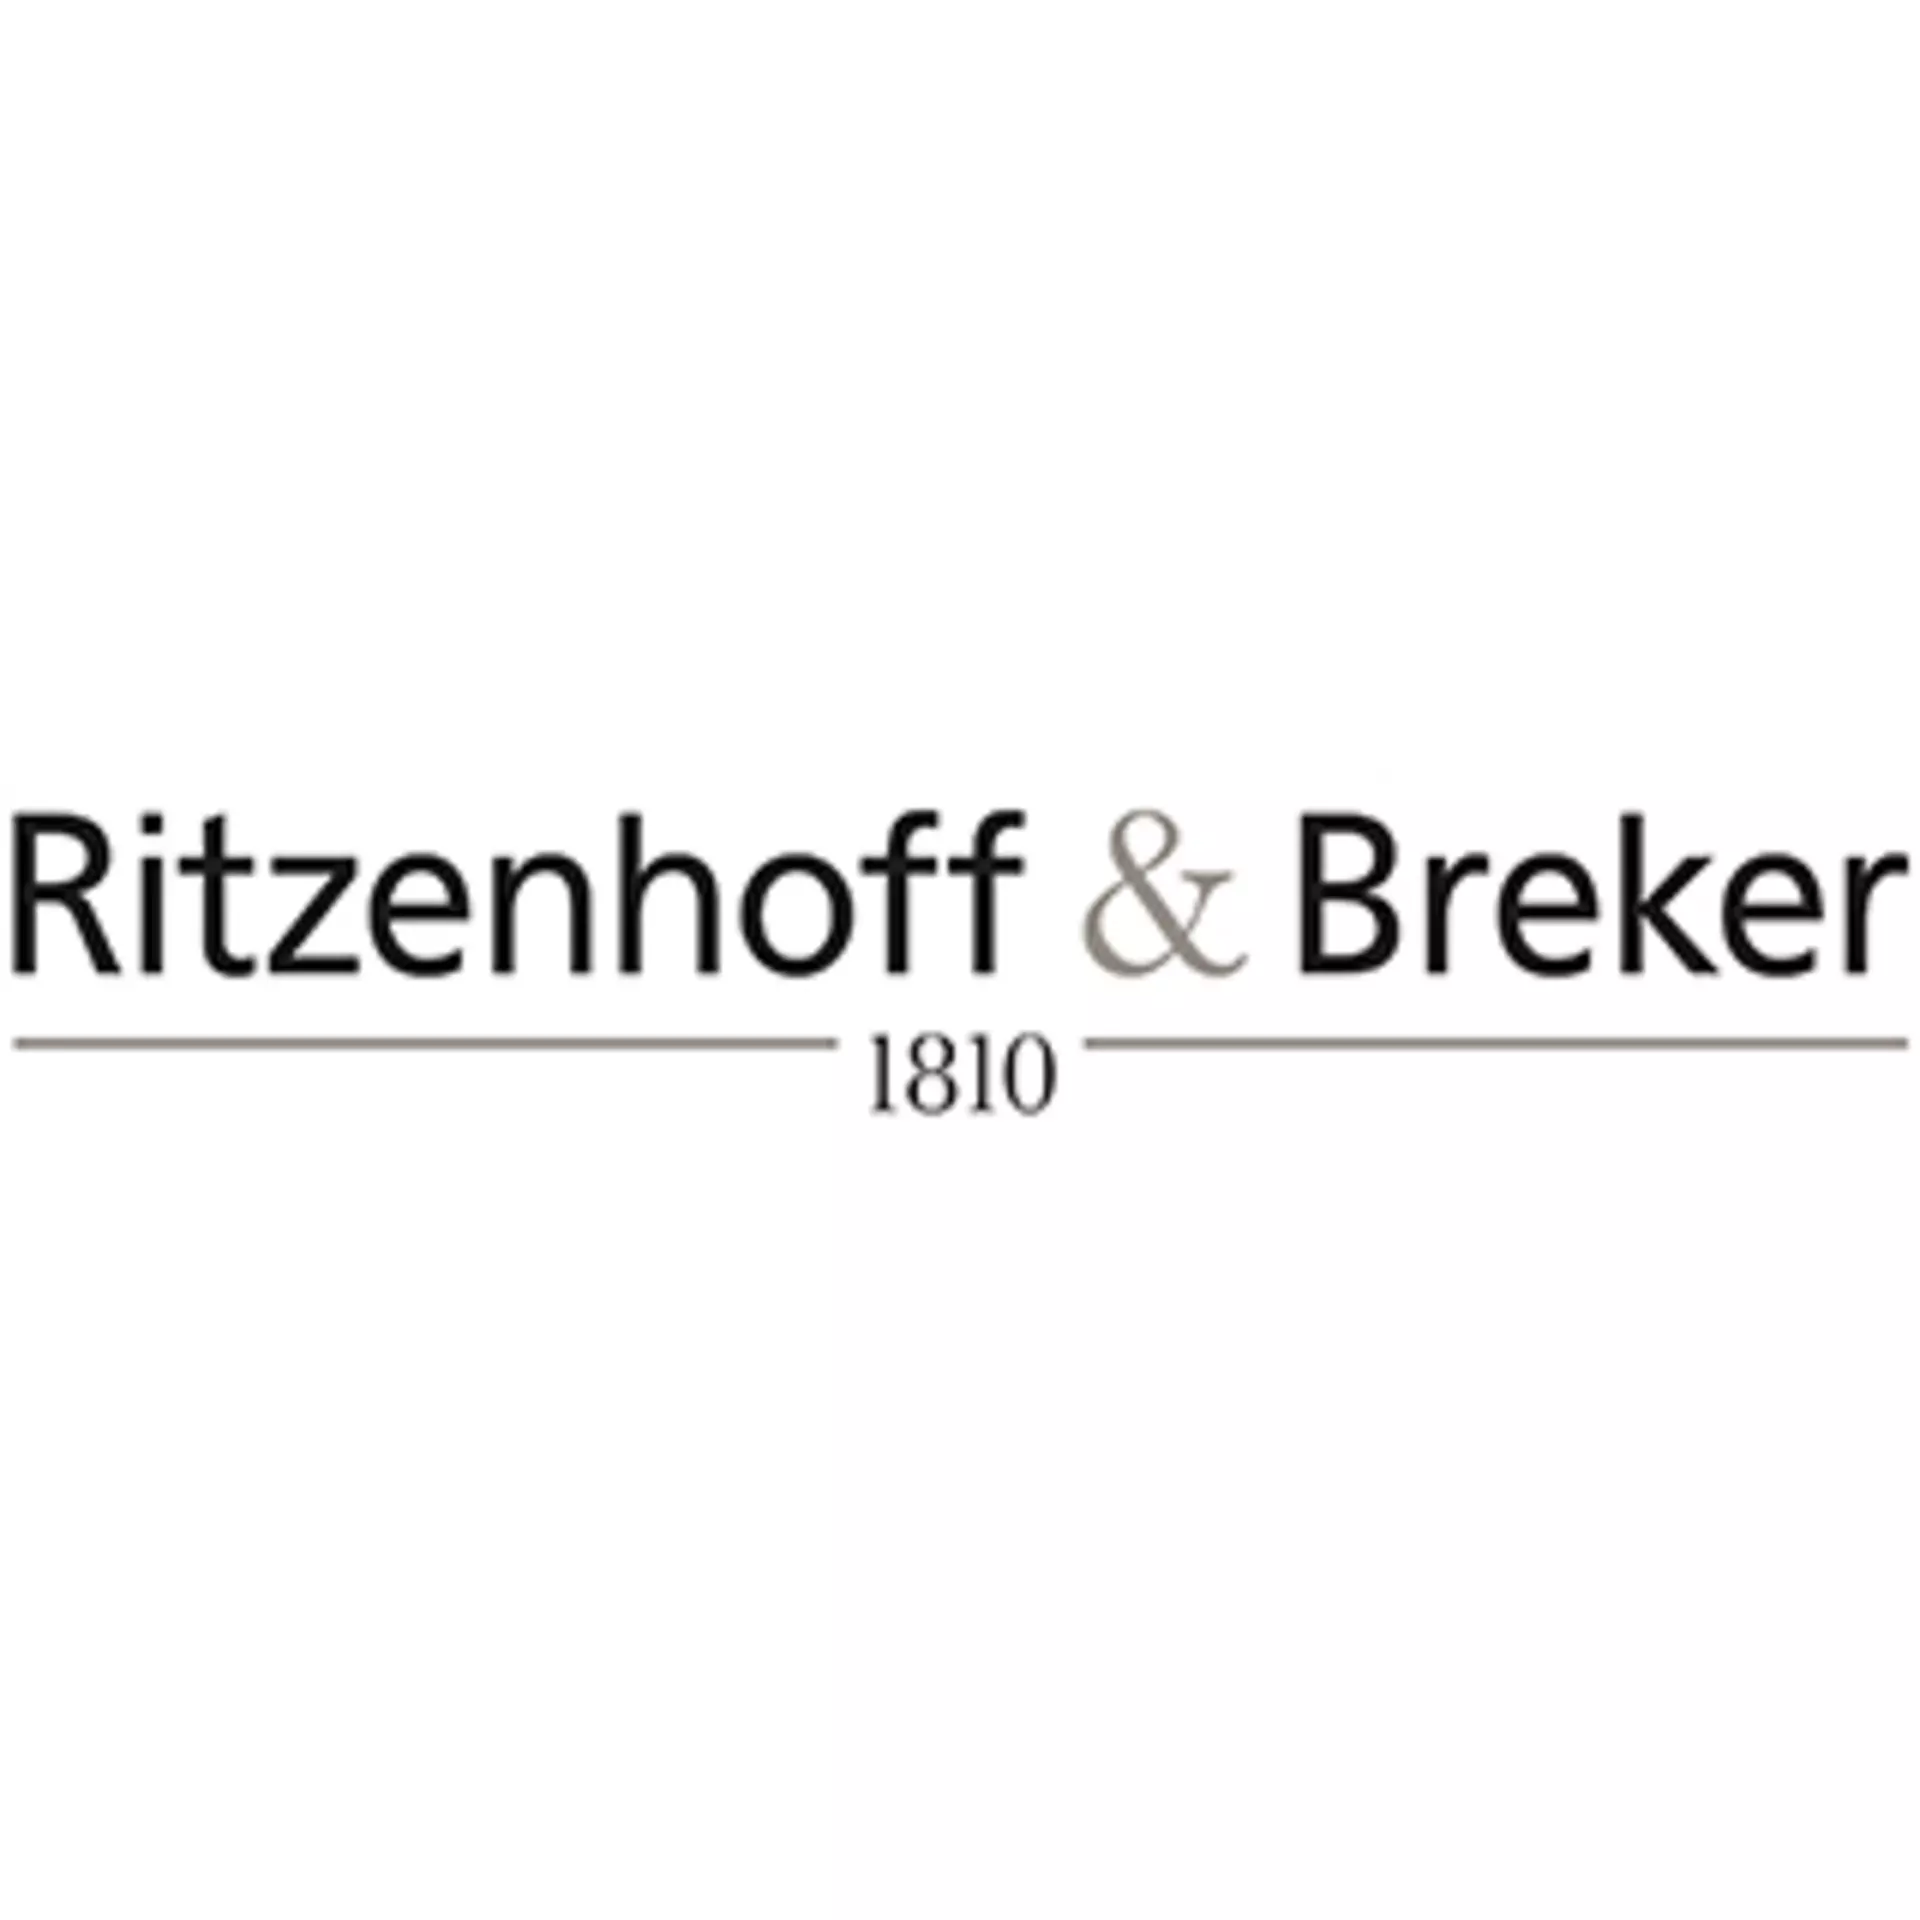 Ritzenhoff & Breker